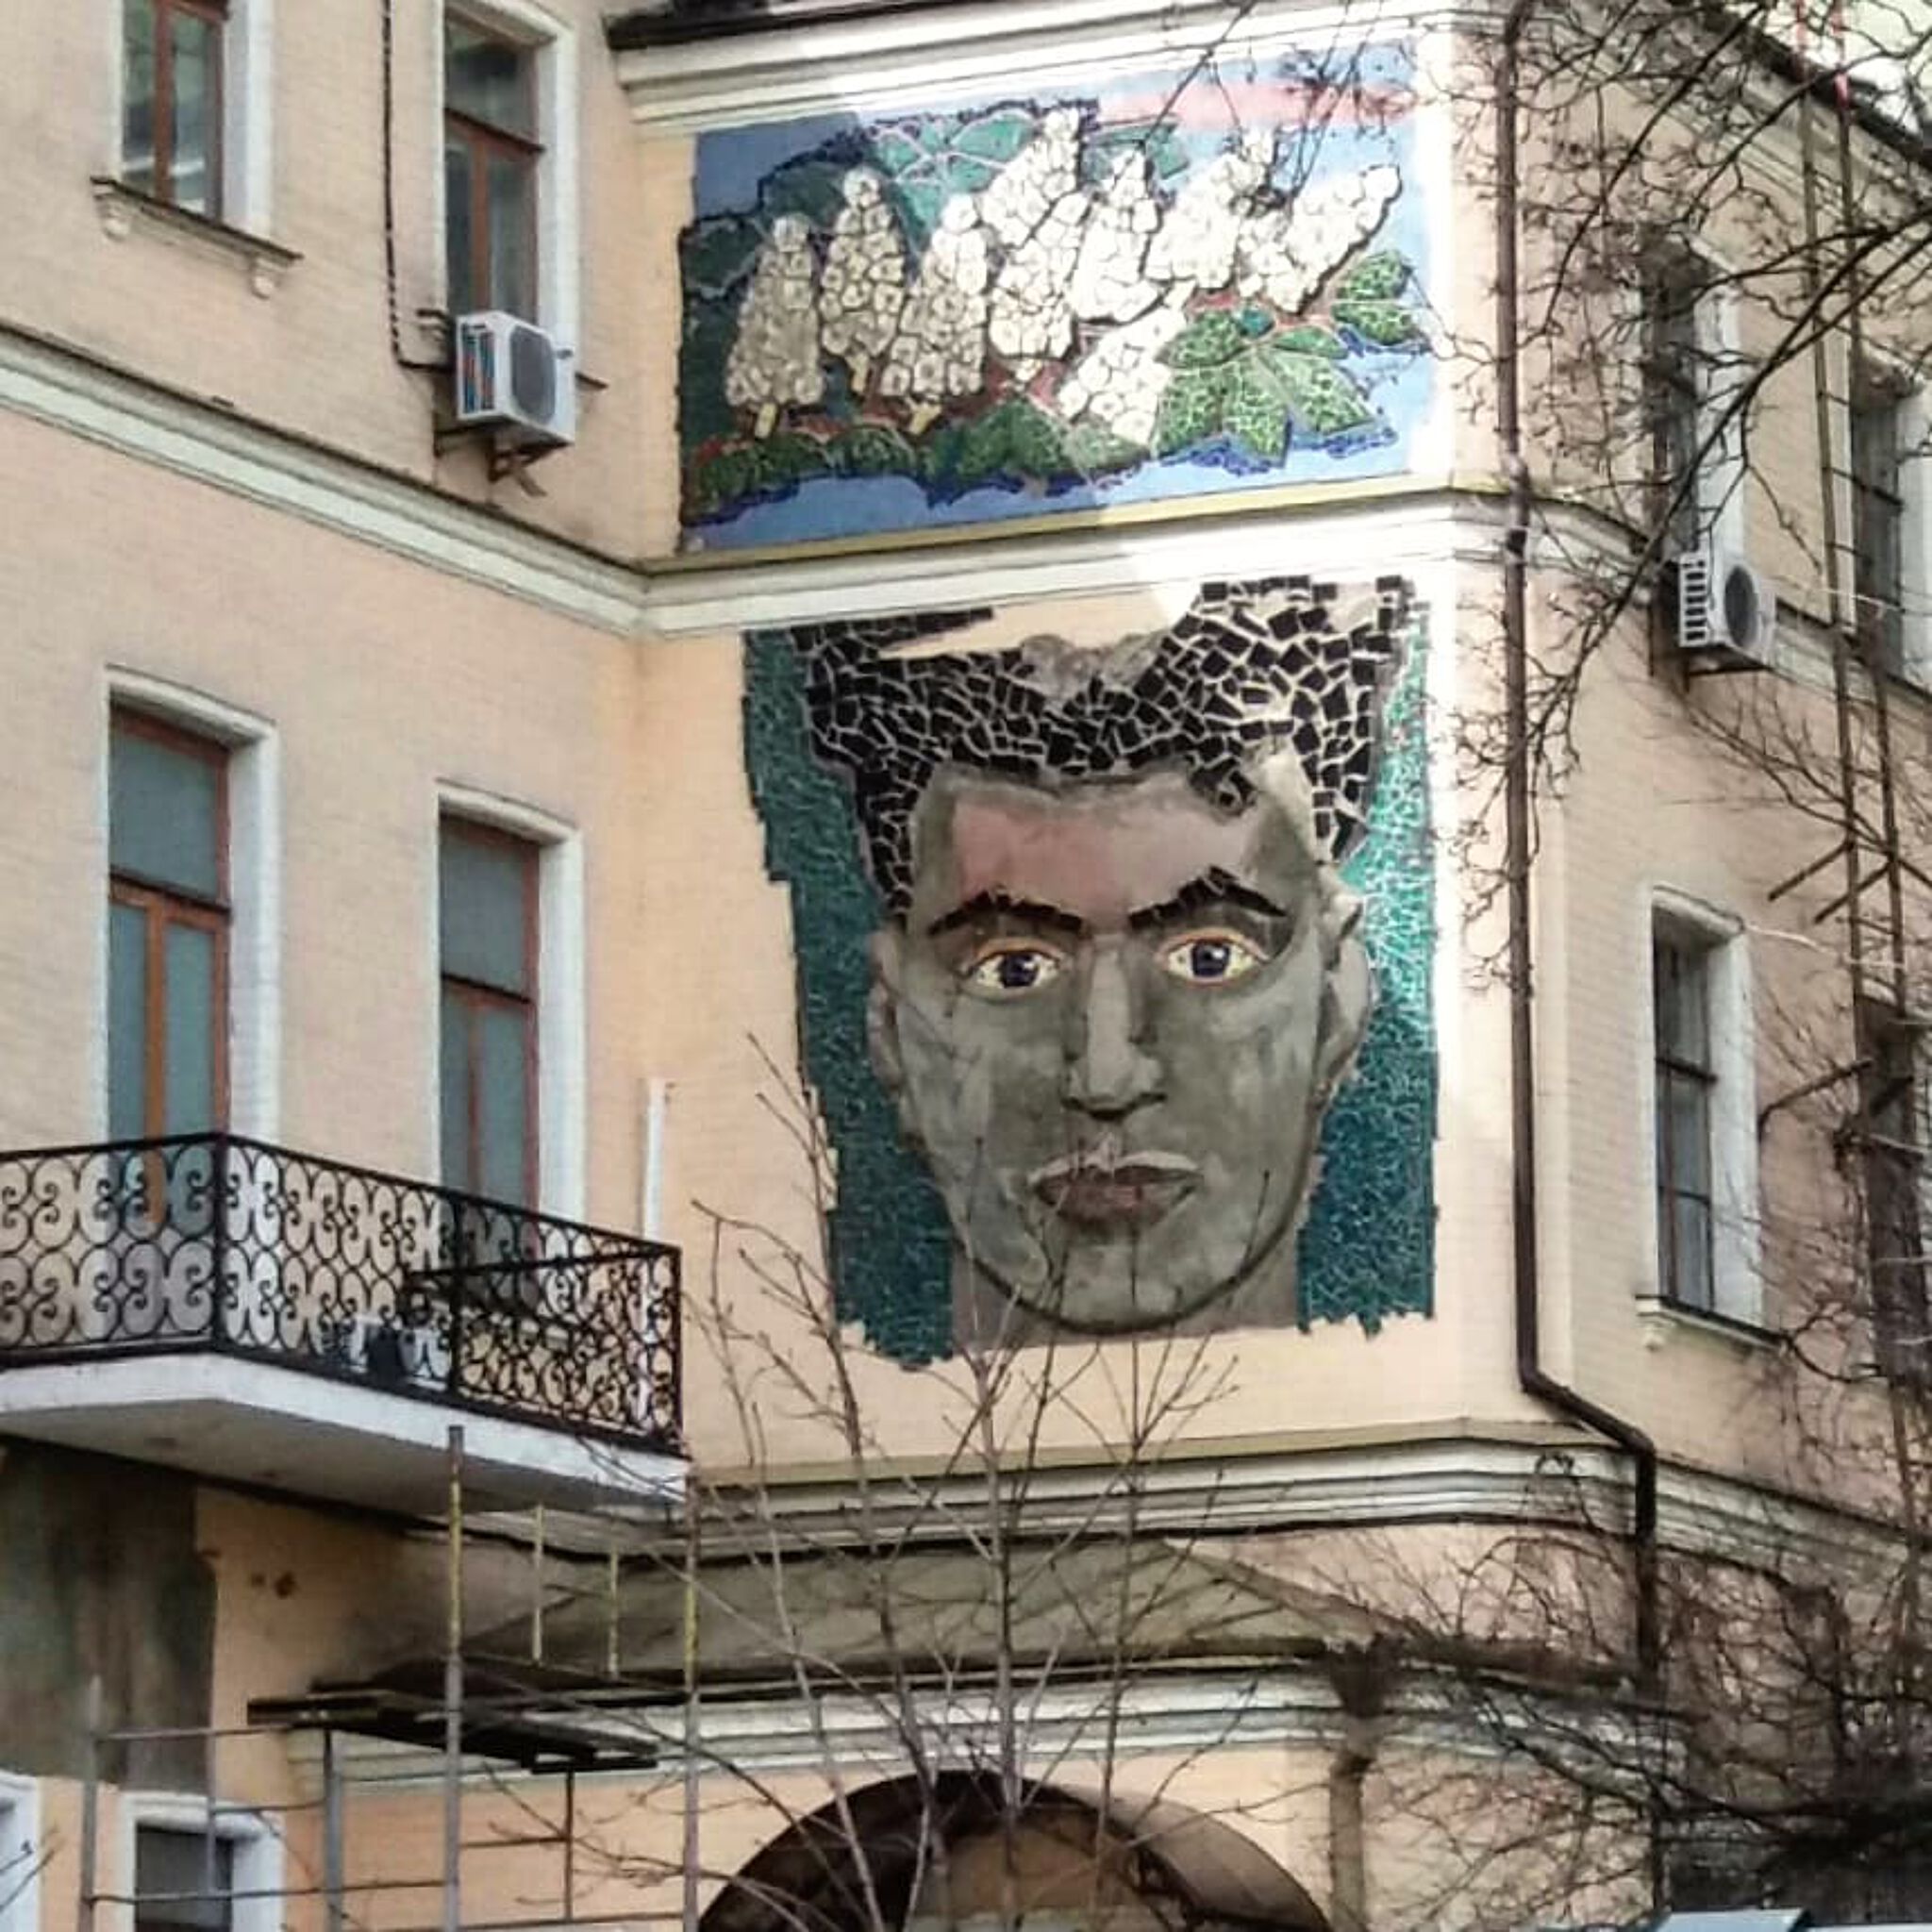 Unknown - Kyiv&mdash;Secret mosaic